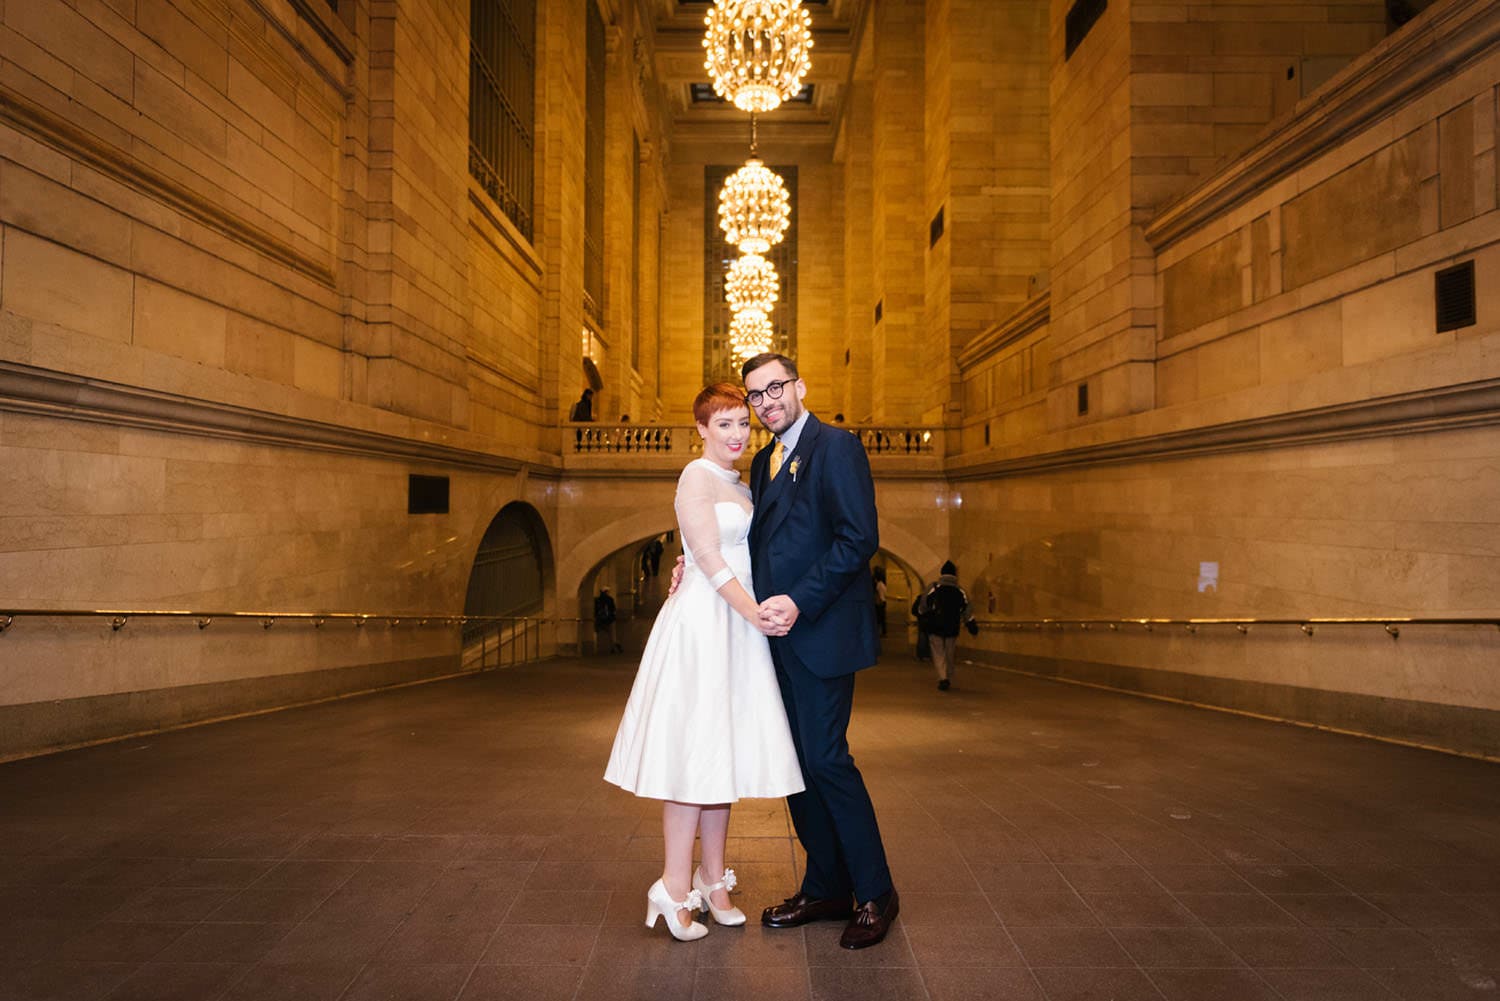 Grand Central wedding photos NYC